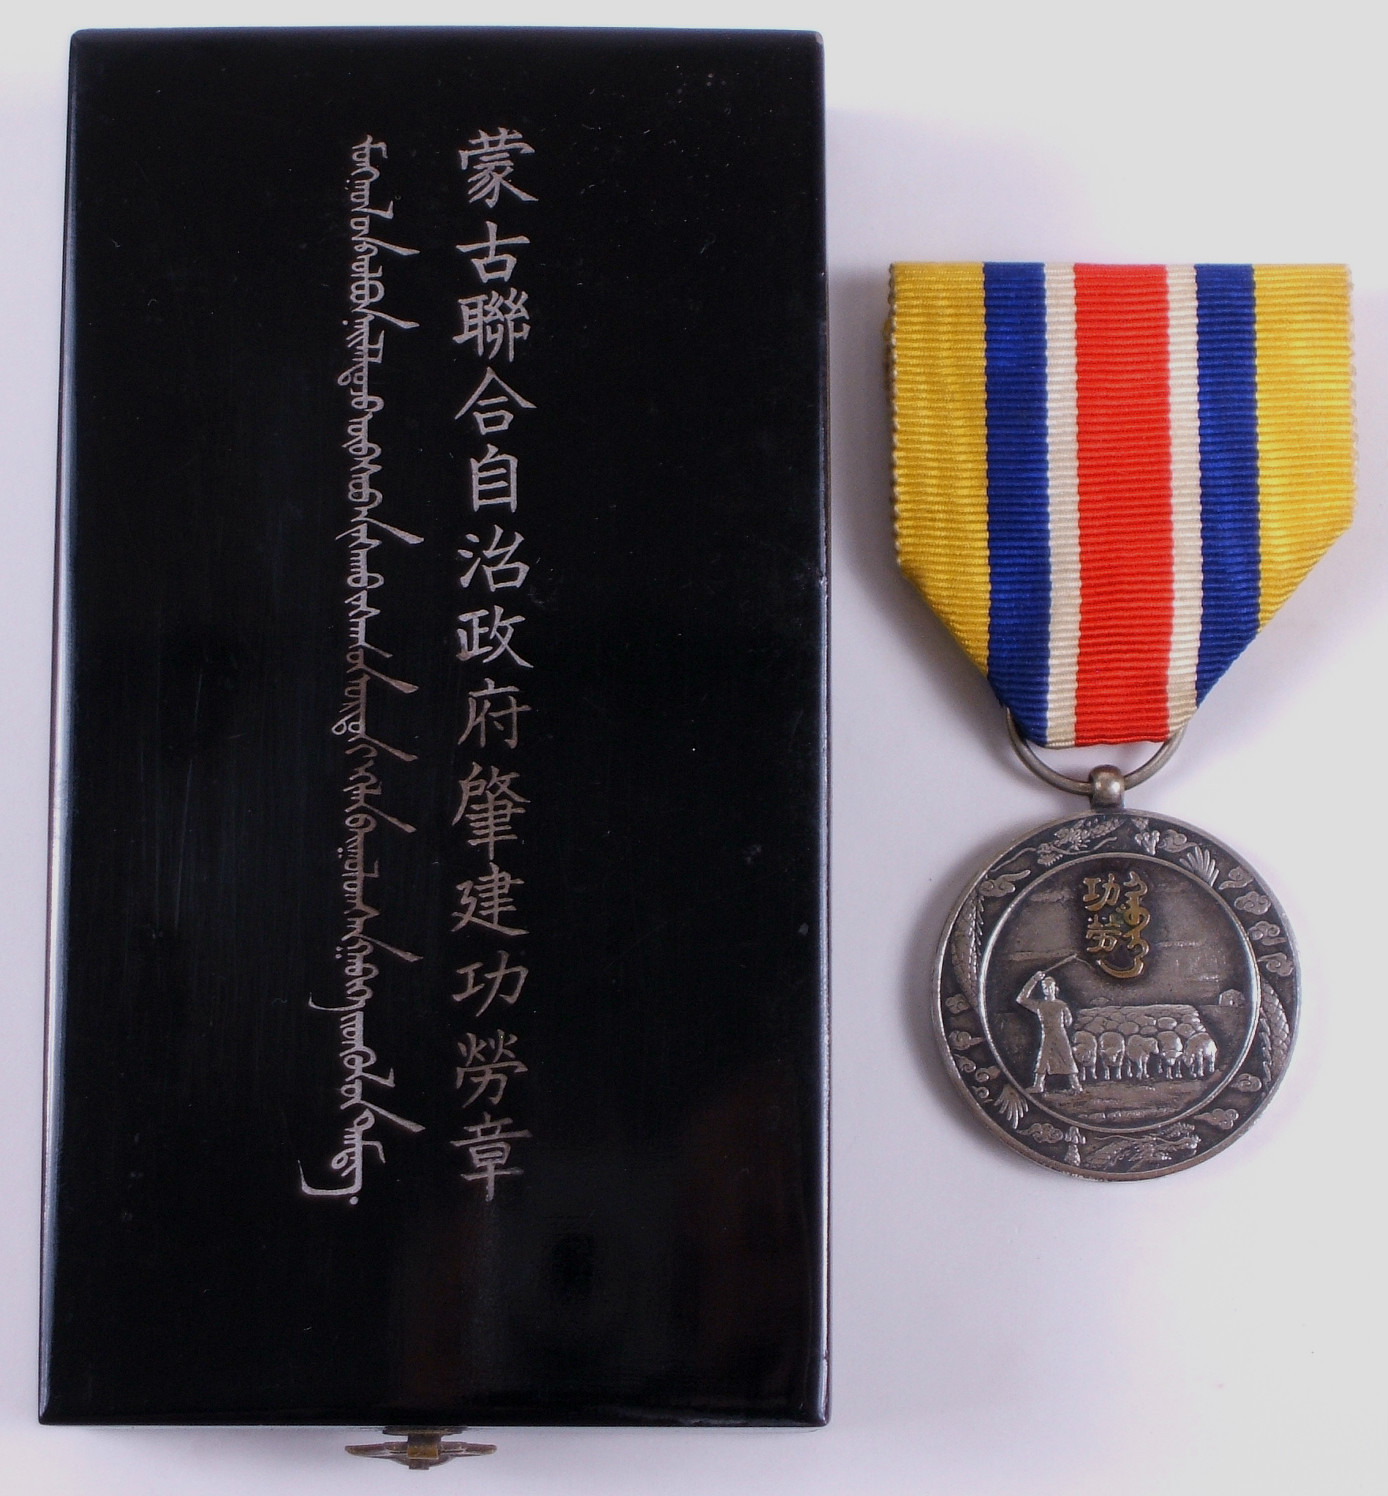 Inner Mongolia National Foundation Merit Medal.jpg